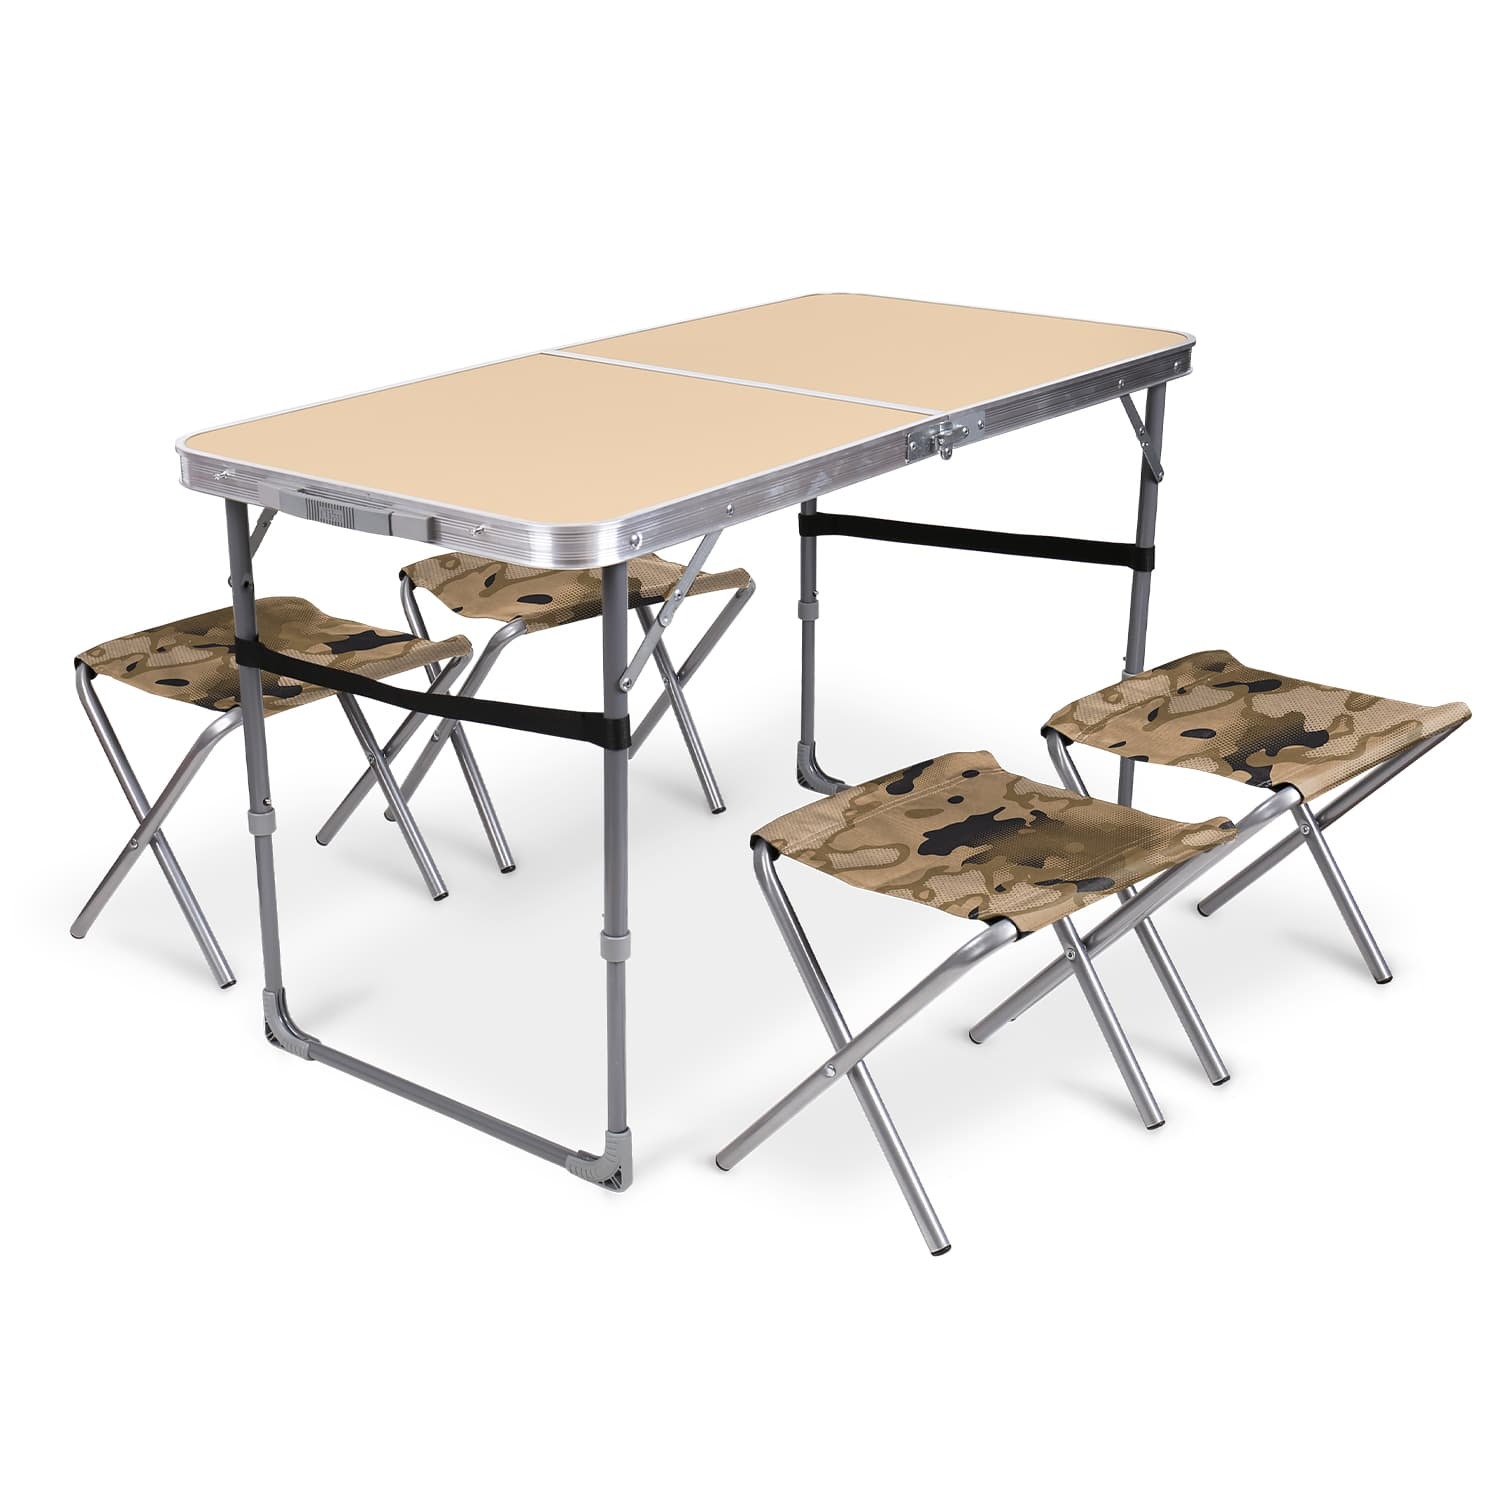 Комплект складной мебели Ника песочный стол с табуретами 5 предметов, цвет серый - фото 1